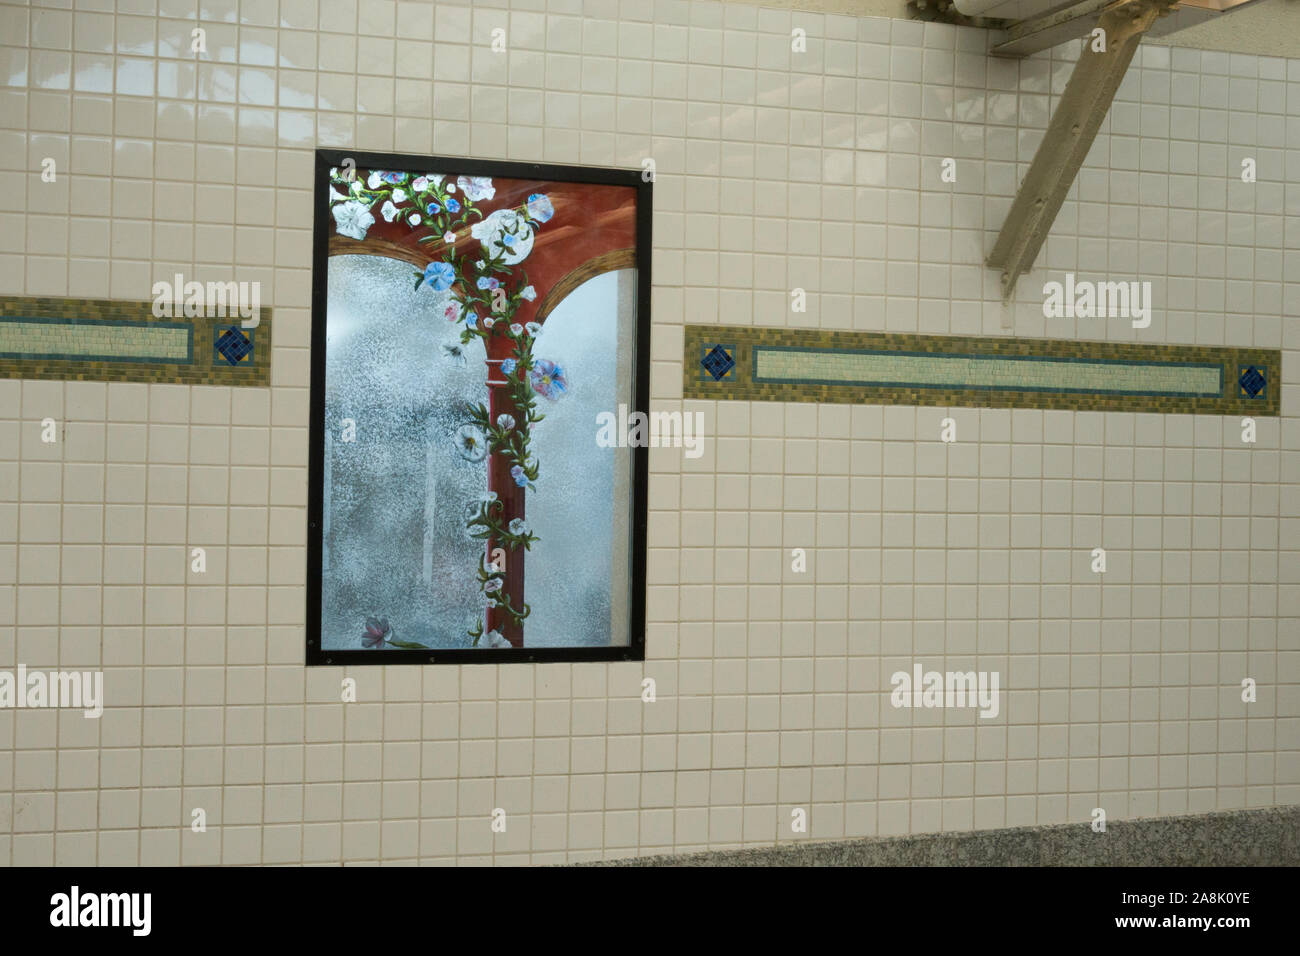 Villa de la station d'art mosaïque par Luisa Caldwell, E. 180 Street Subway Station, le Bronx, NYC Banque D'Images